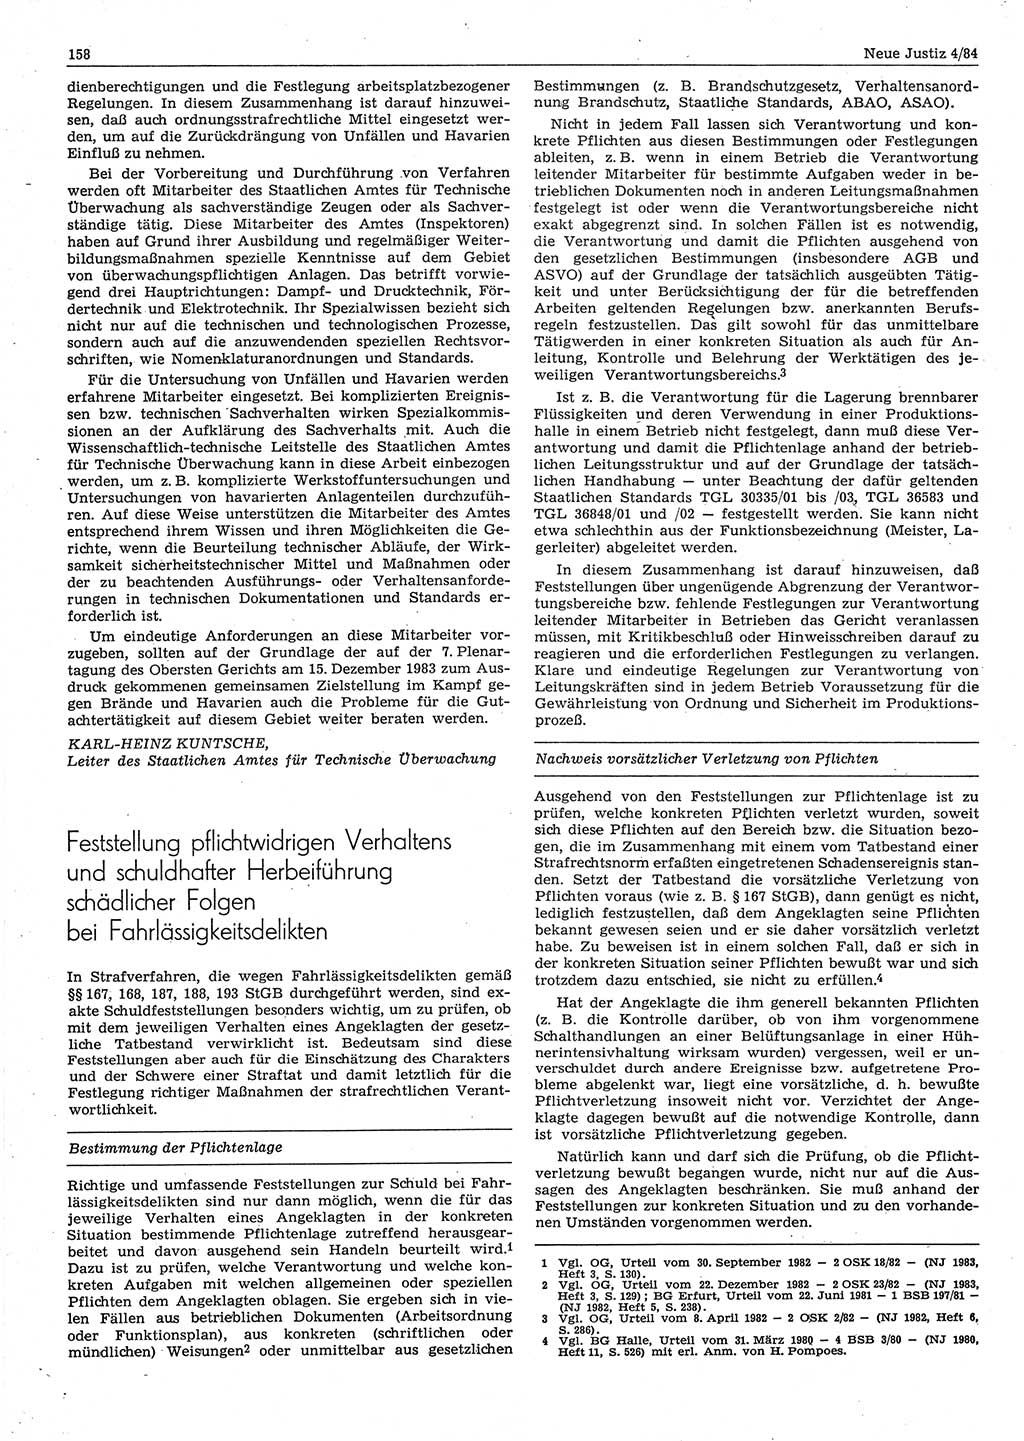 Neue Justiz (NJ), Zeitschrift für sozialistisches Recht und Gesetzlichkeit [Deutsche Demokratische Republik (DDR)], 38. Jahrgang 1984, Seite 158 (NJ DDR 1984, S. 158)